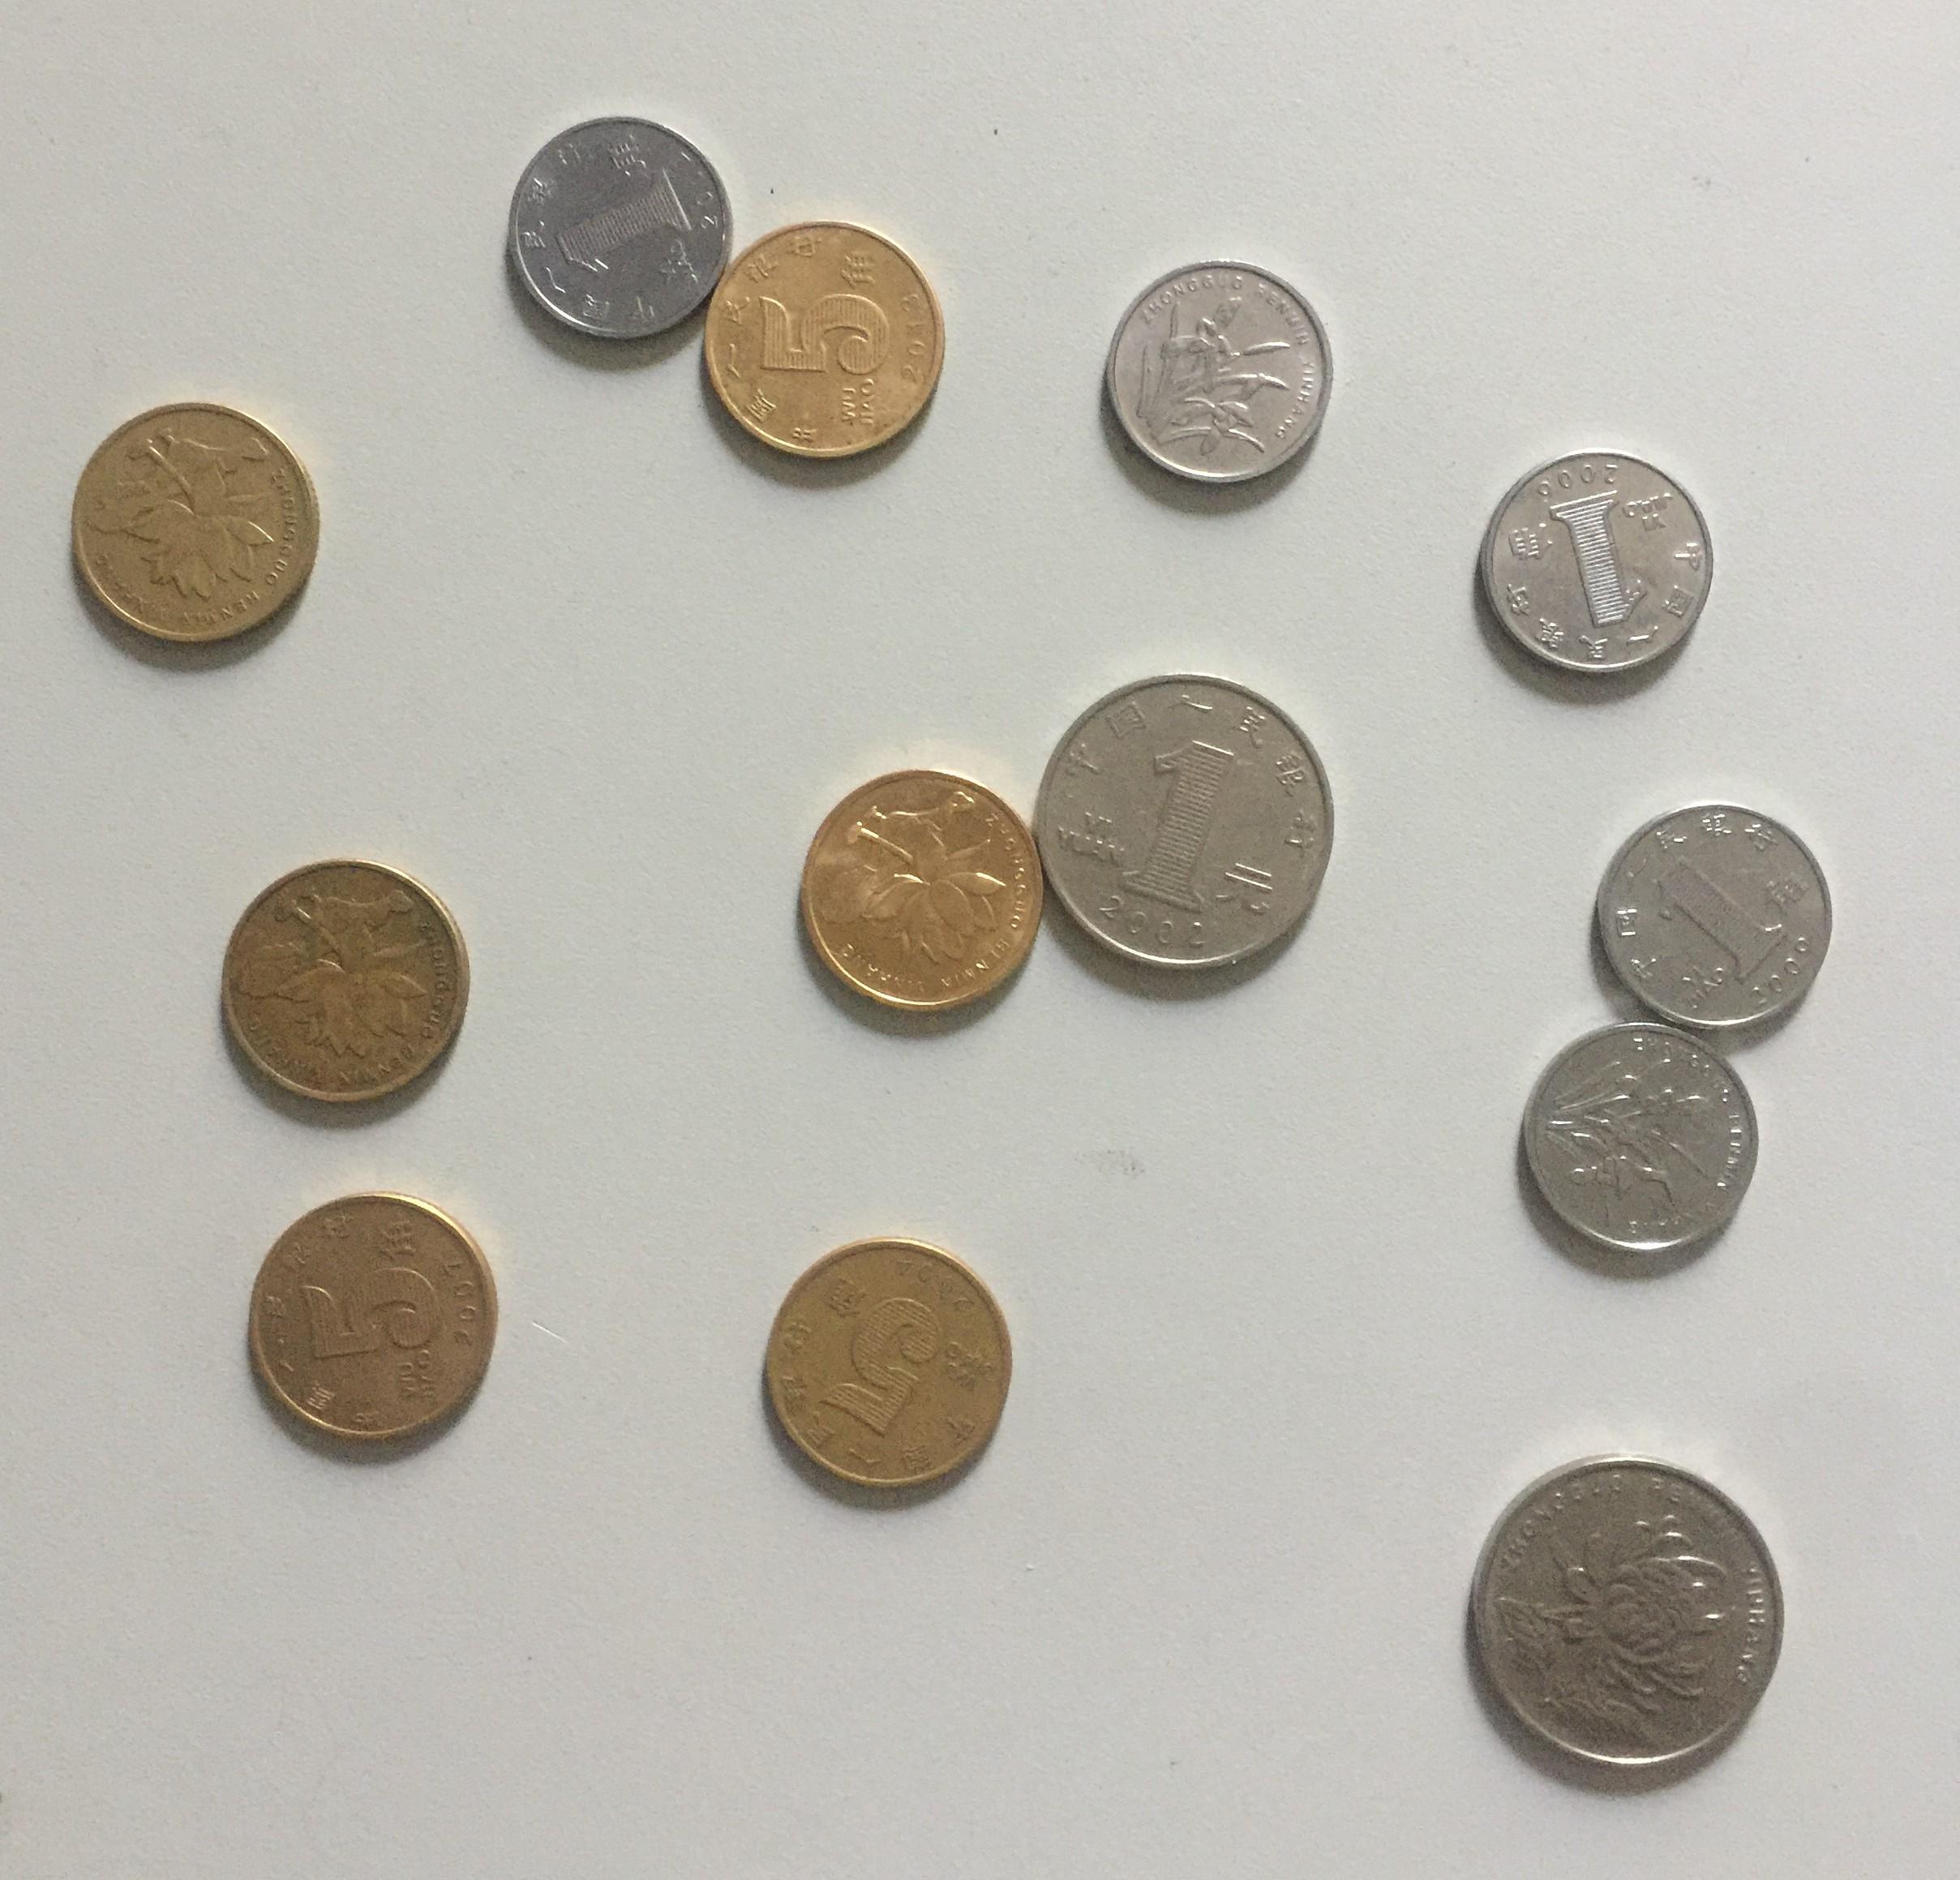 5瑞典克朗硬币 库存图片. 图片 包括有 市场, 商务, 对象, 一个, 货币, 工资, 查出, 付款, 更改 - 91905445